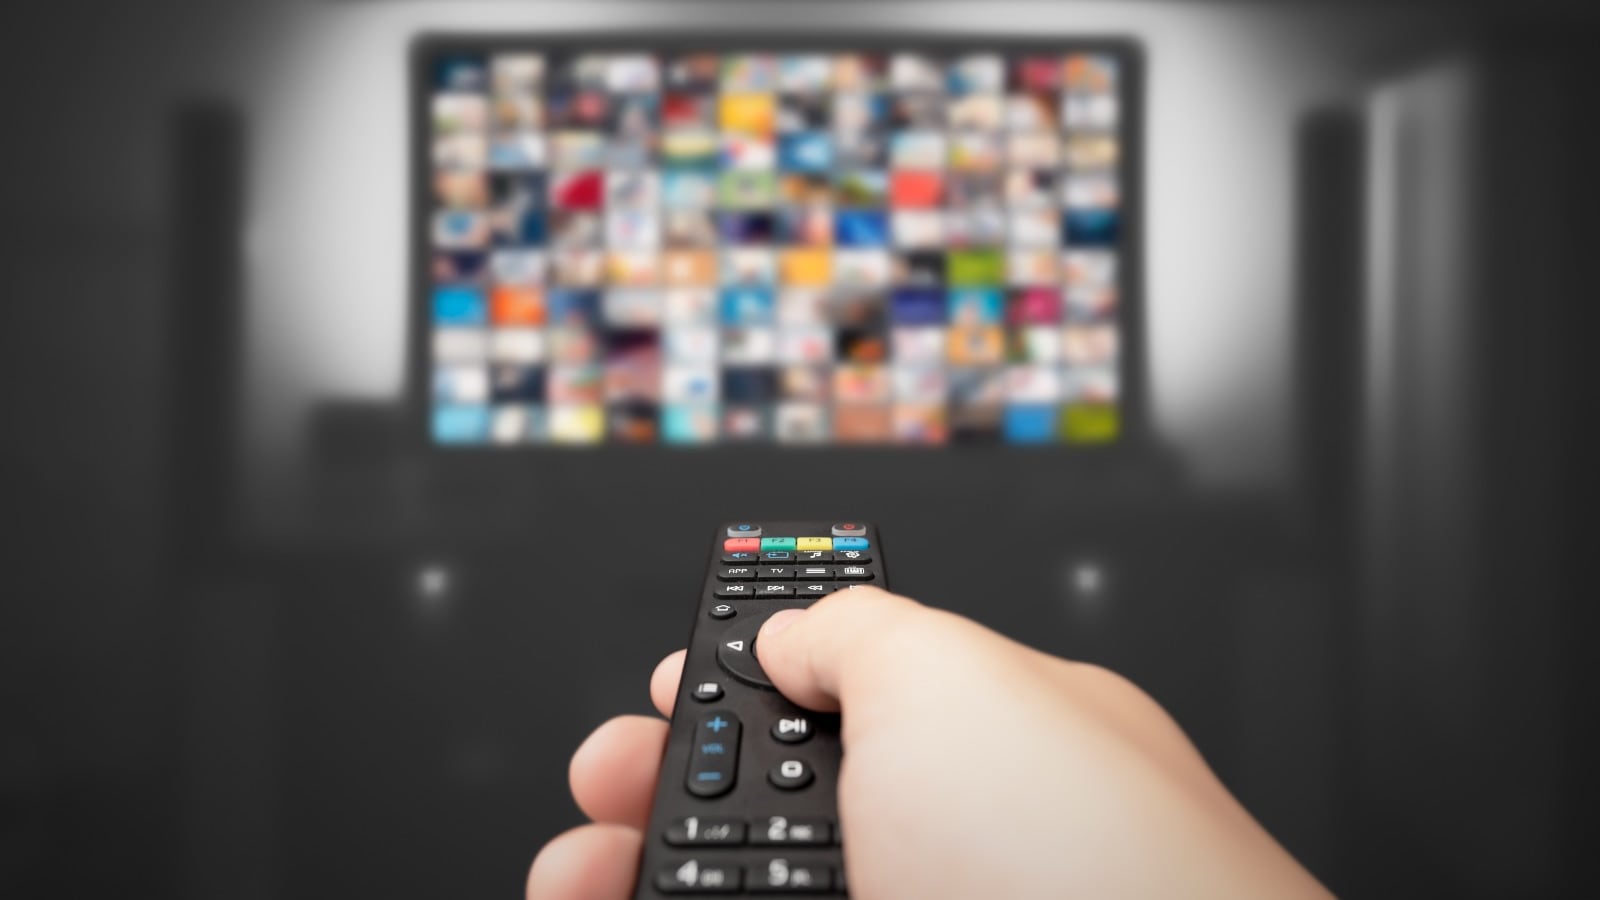 Una mano apunta un control remoto hacia un televisor, en el que se observan cuadritos borrosos simulando diferentes escenas o aplicaciones.